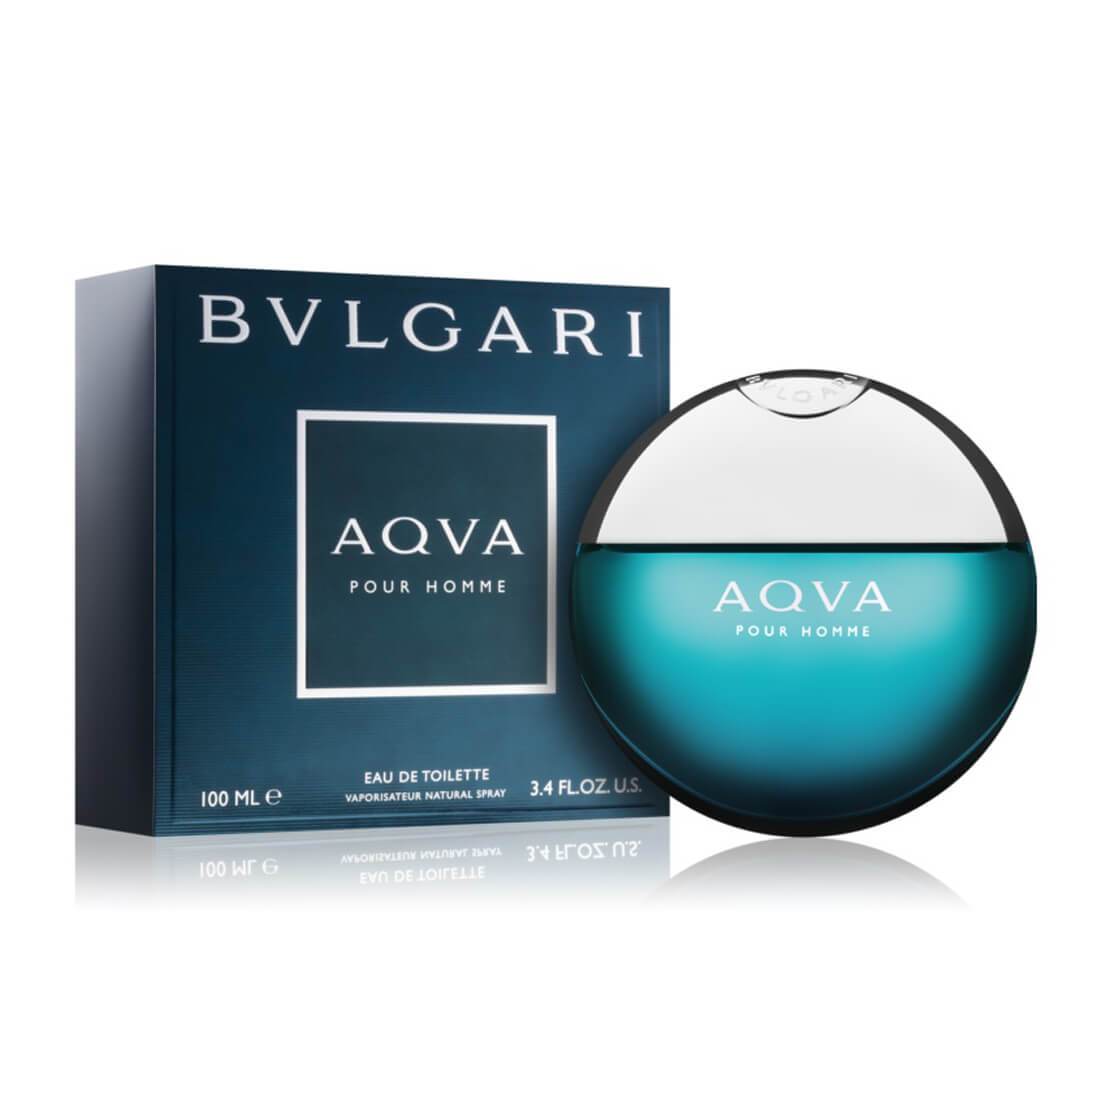 Bvlgari Perfume for Men